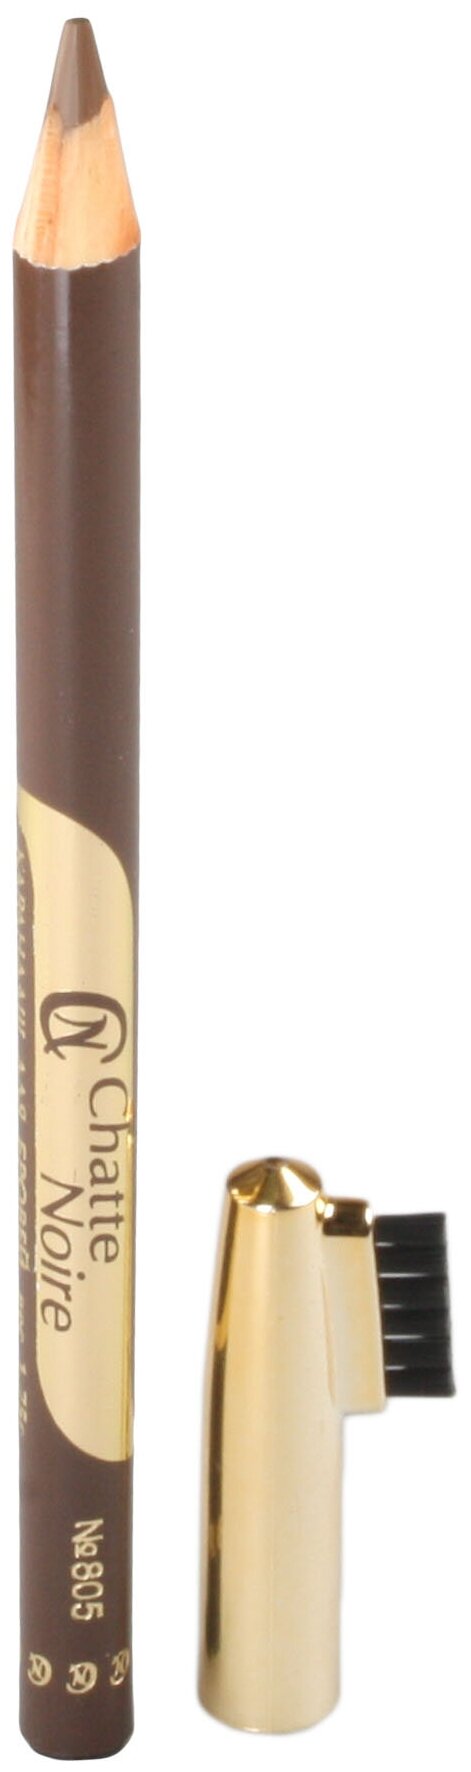 Карандаш для бровей Chatte Noire №805, Цвет: светлый светло-коричневый. Вес:1,75 гр.